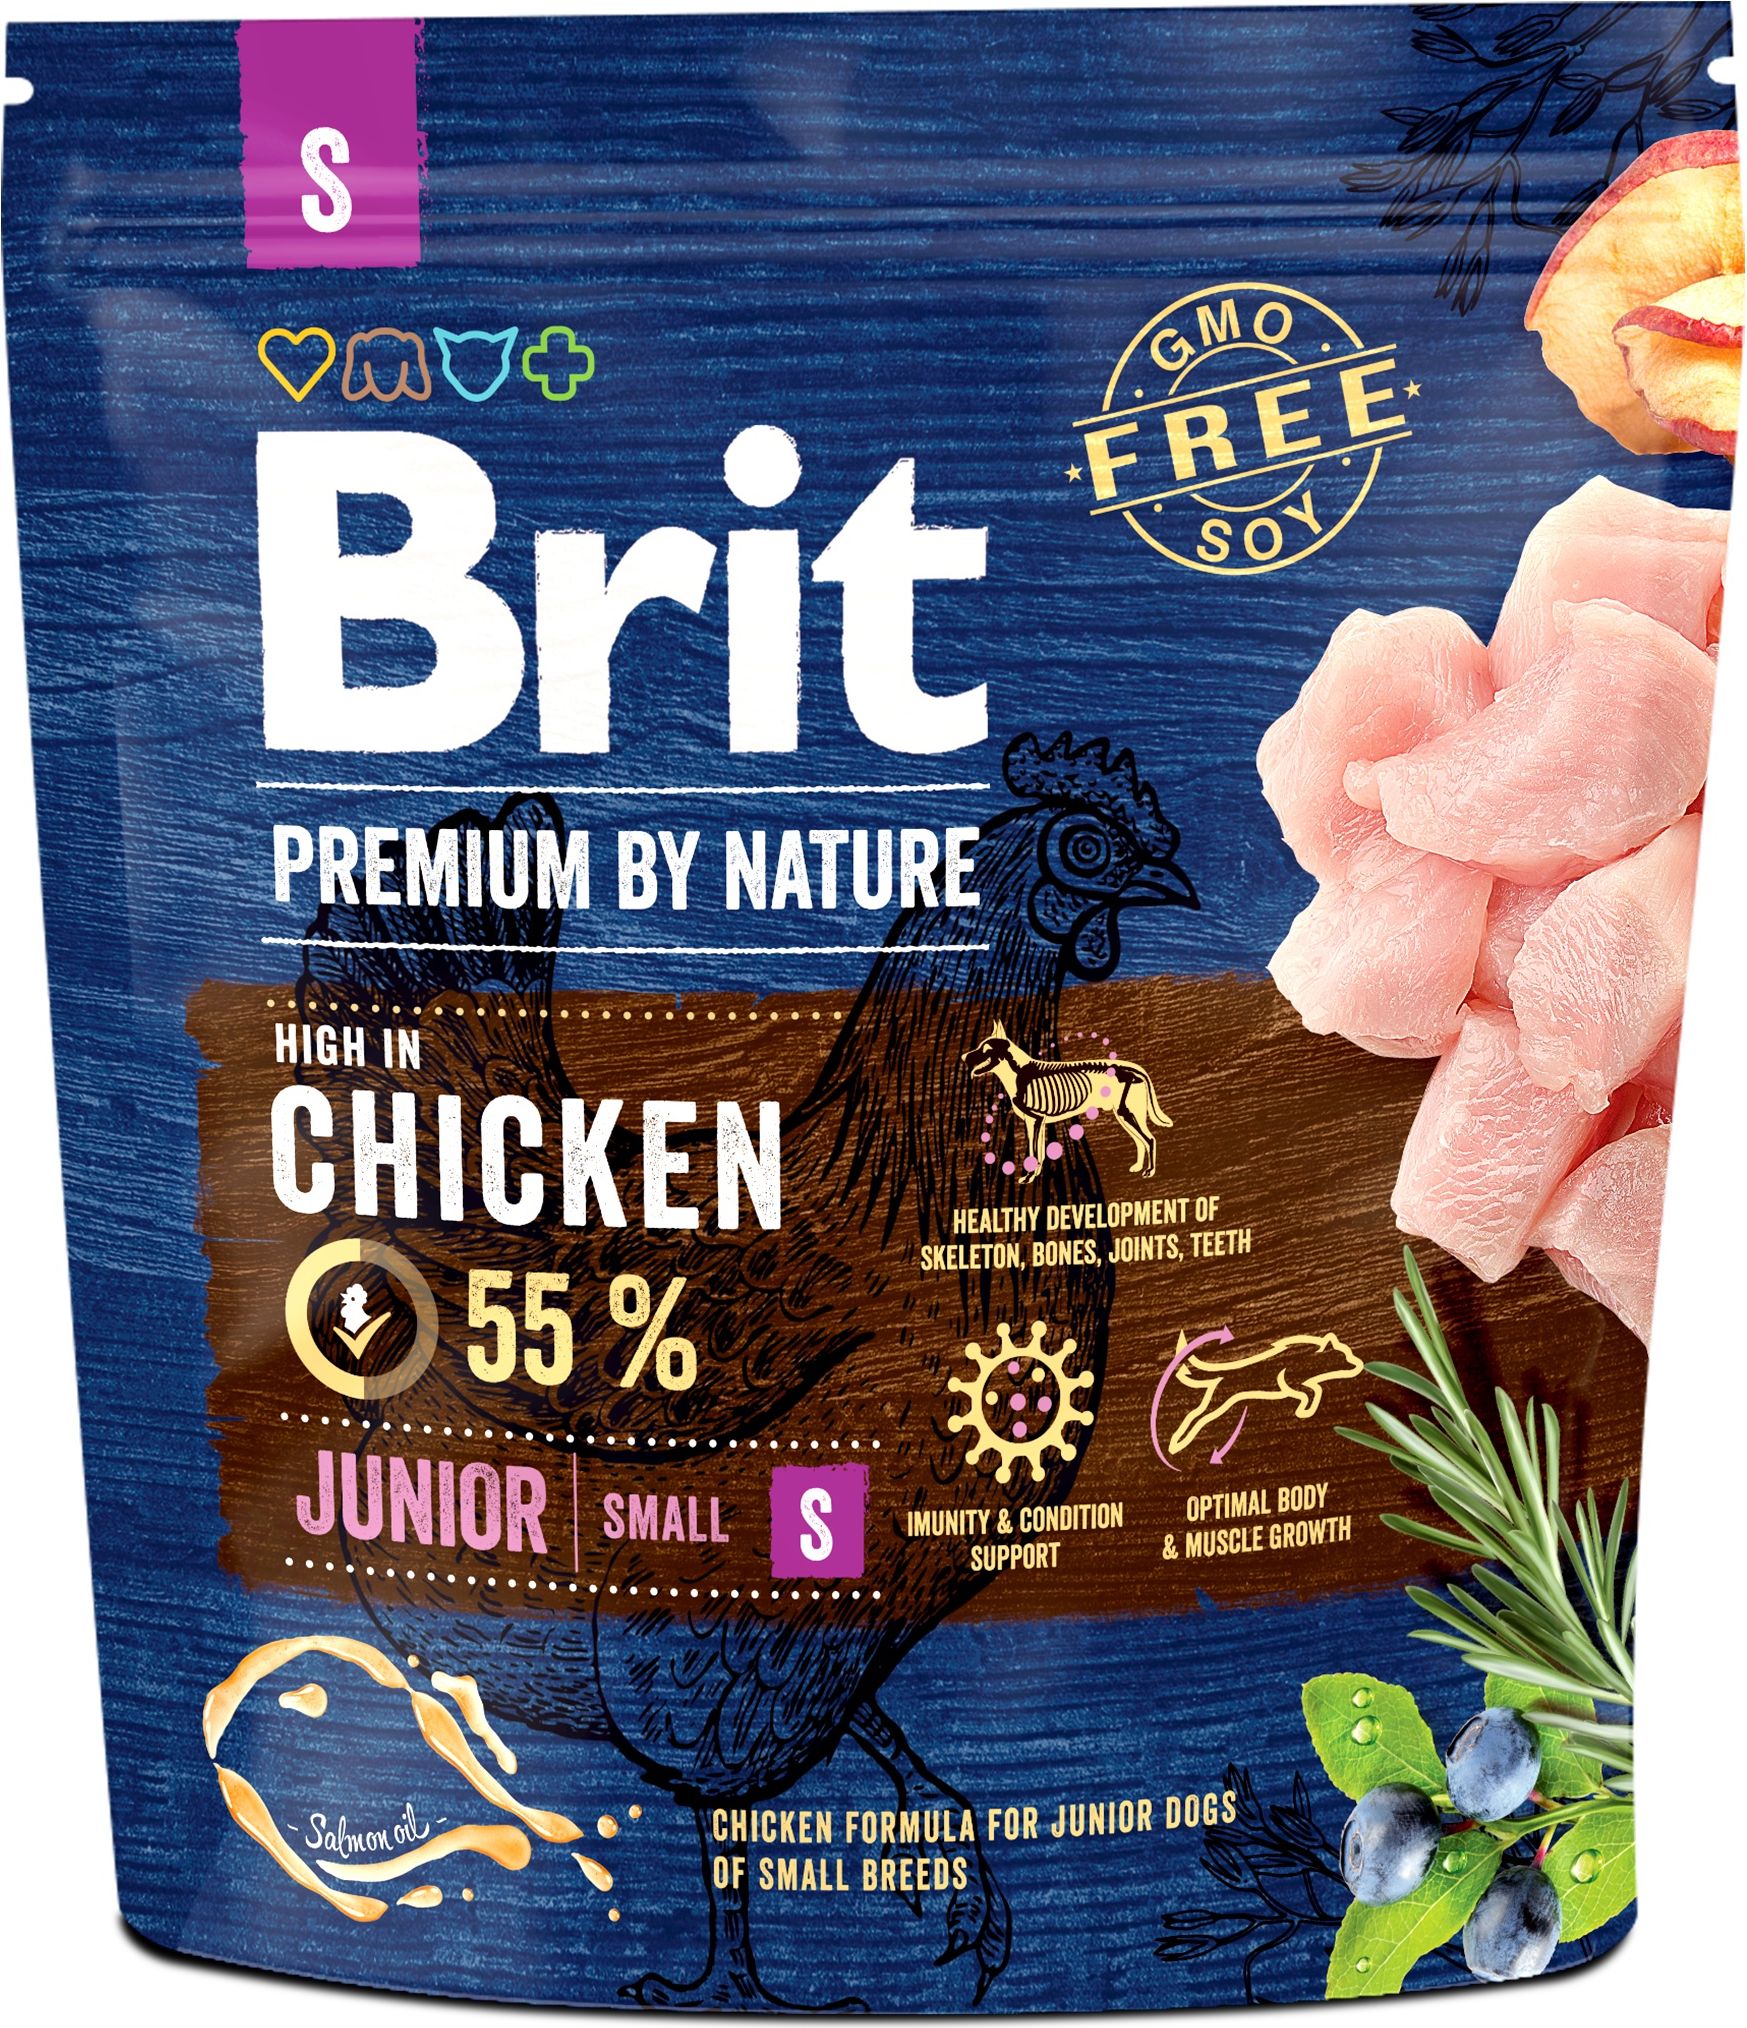 Brit Premium By Nature Junior S Small 1kg este un brand polonez de hrana pentru caini, special creat pentru catelusii de talie mica, aflati in perioada de crestere. Aceasta hrana contine ingrediente naturale si de inalta calitate, care asigura o diet